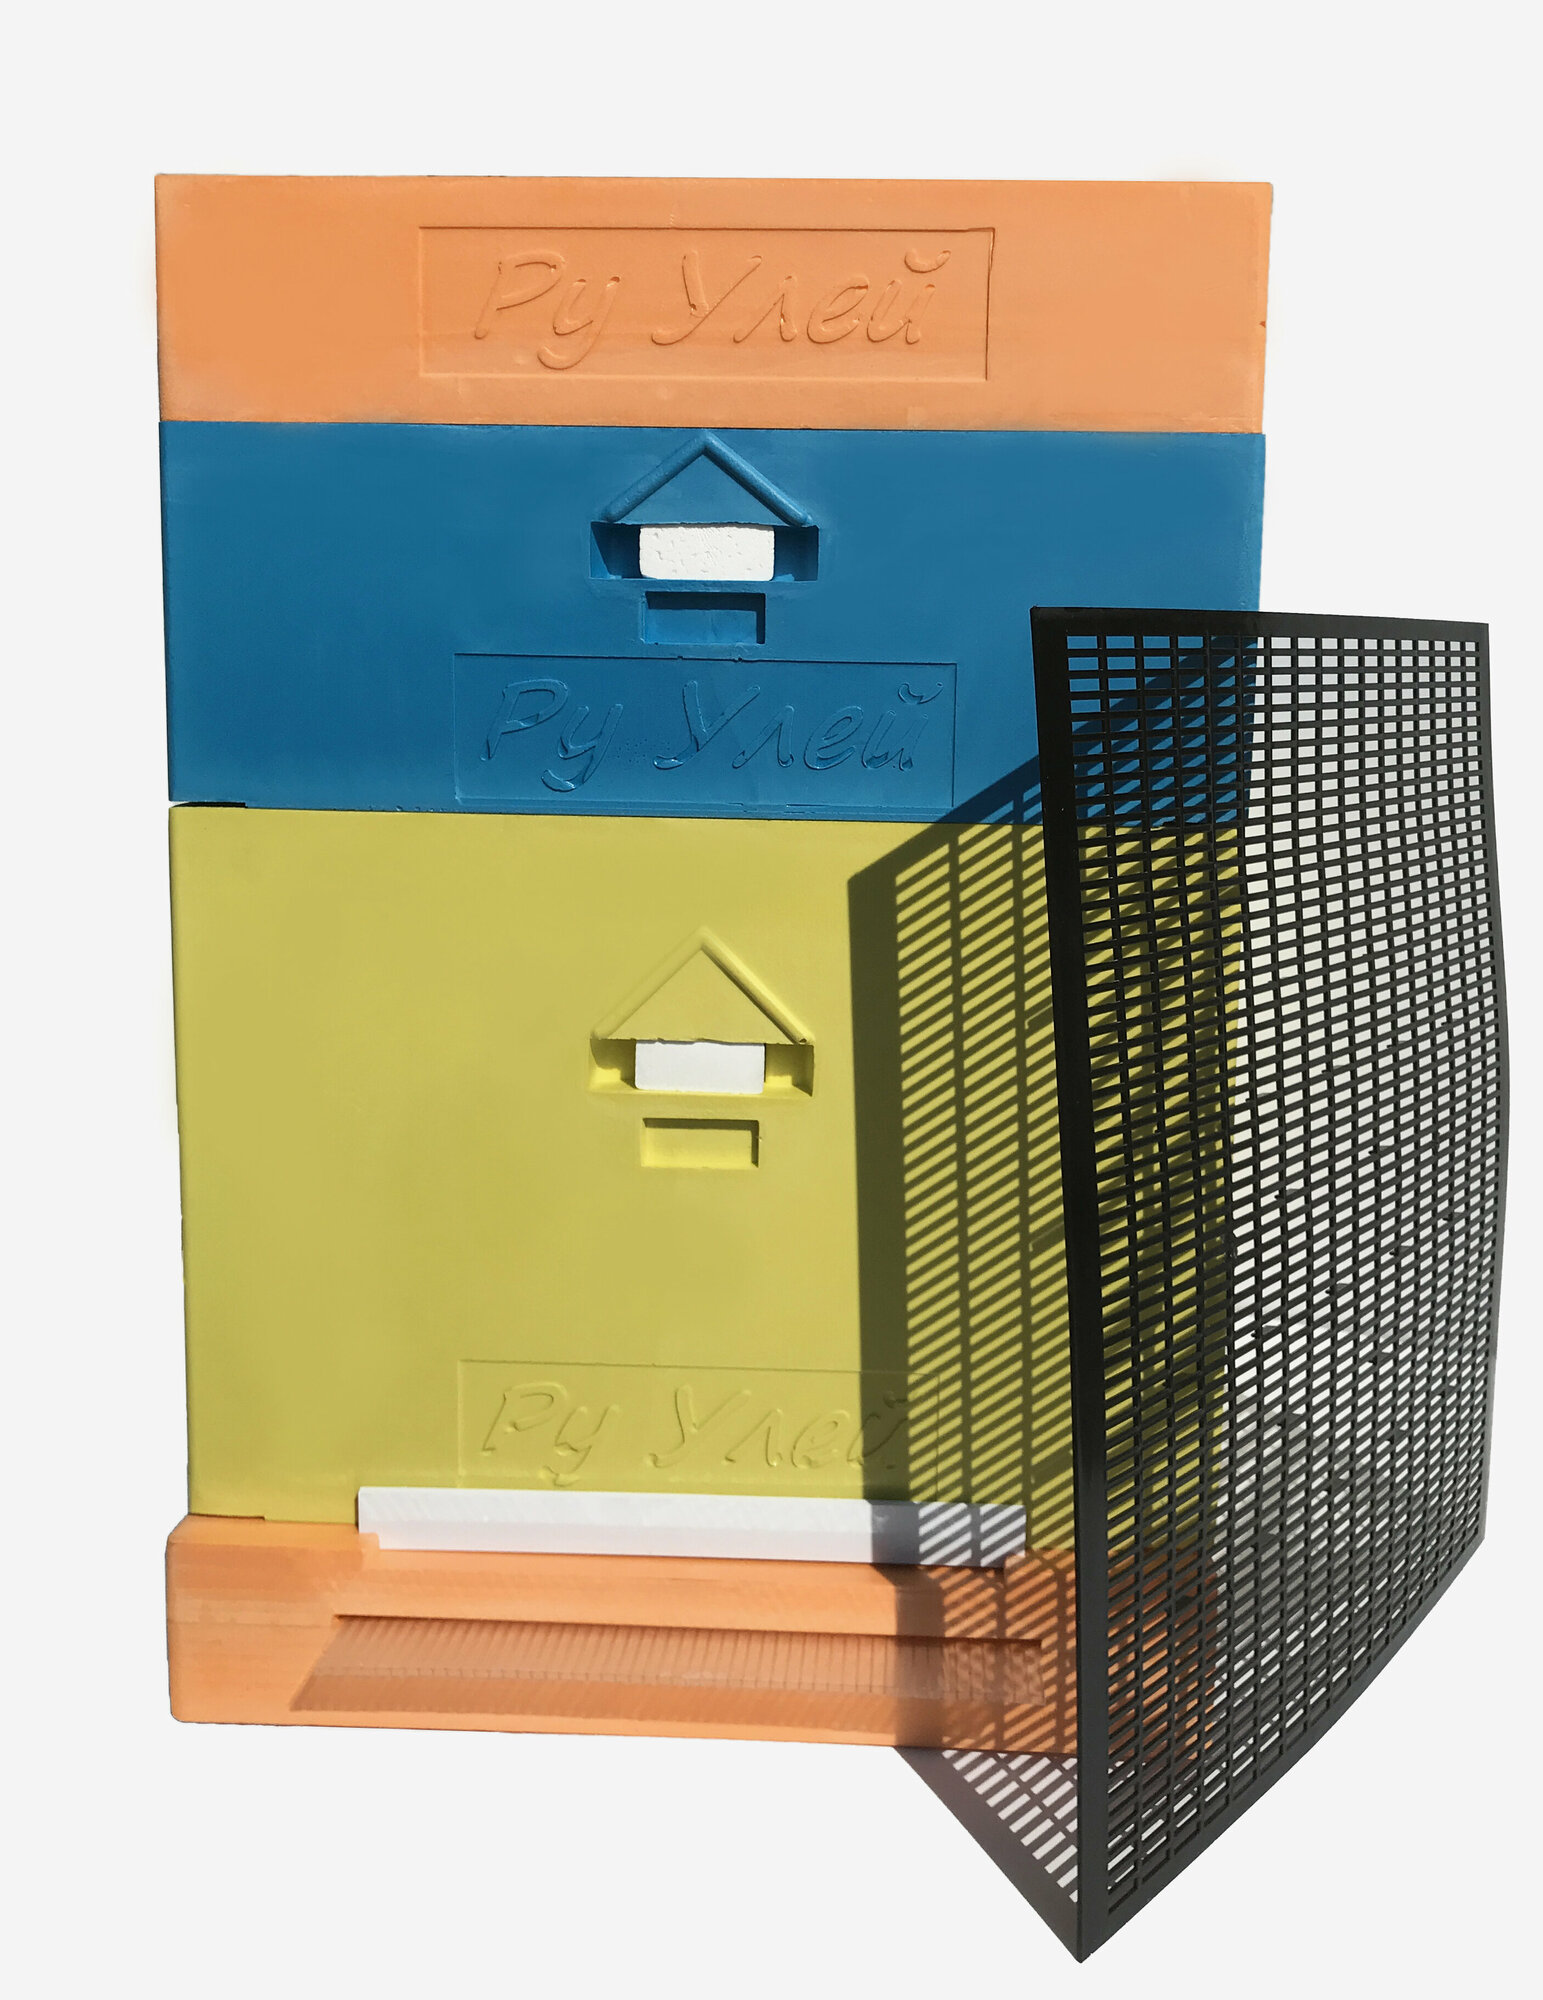 Улей для пчел ППУ 10 рамочный "Ру Улей", комплект 1 Дадан +1 Магазин + разделительная решетка